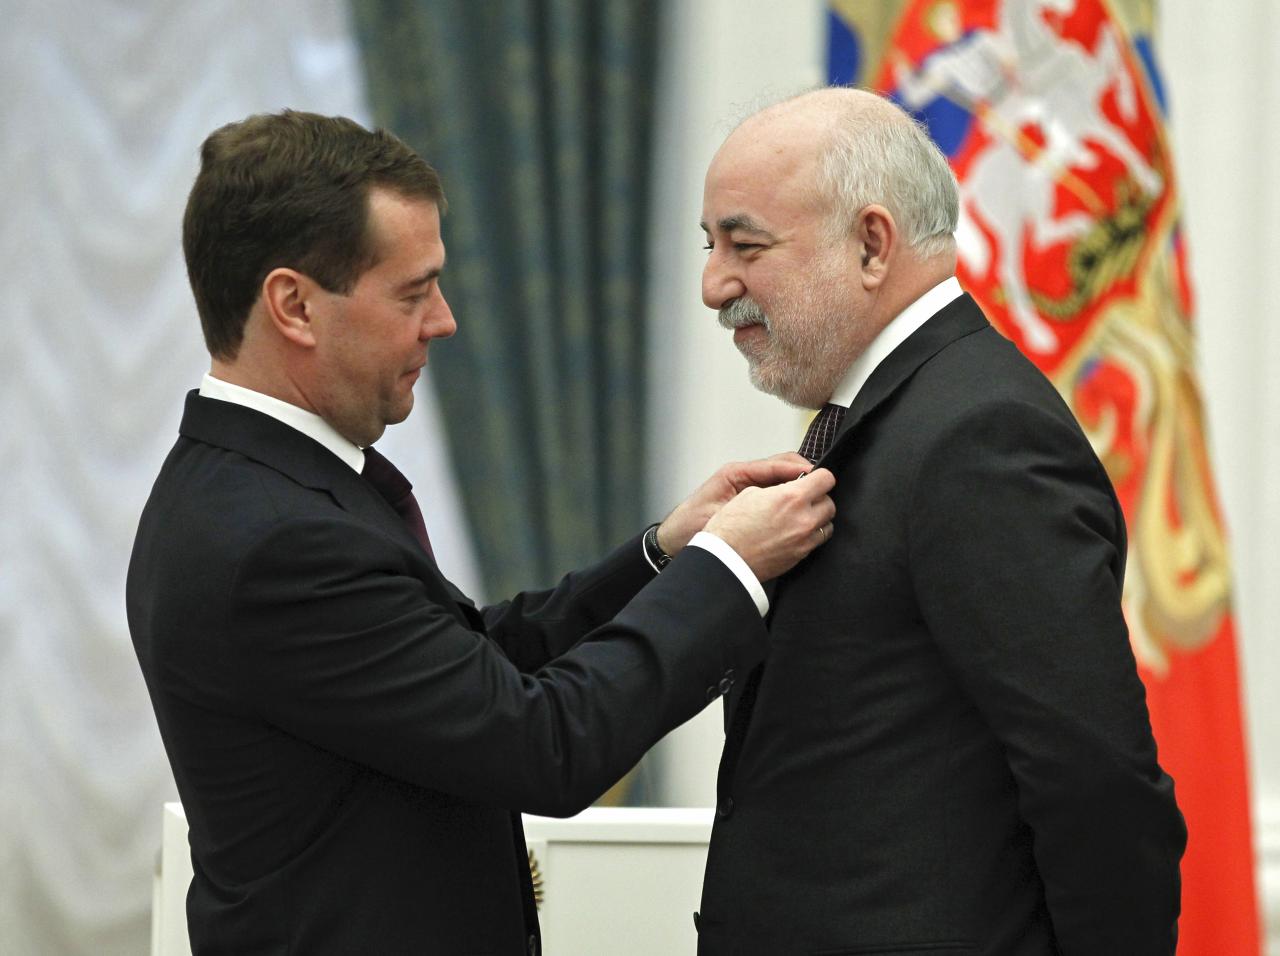 Vekselberg recibe una distinción del expresidente ruso Dmitry Medvedev